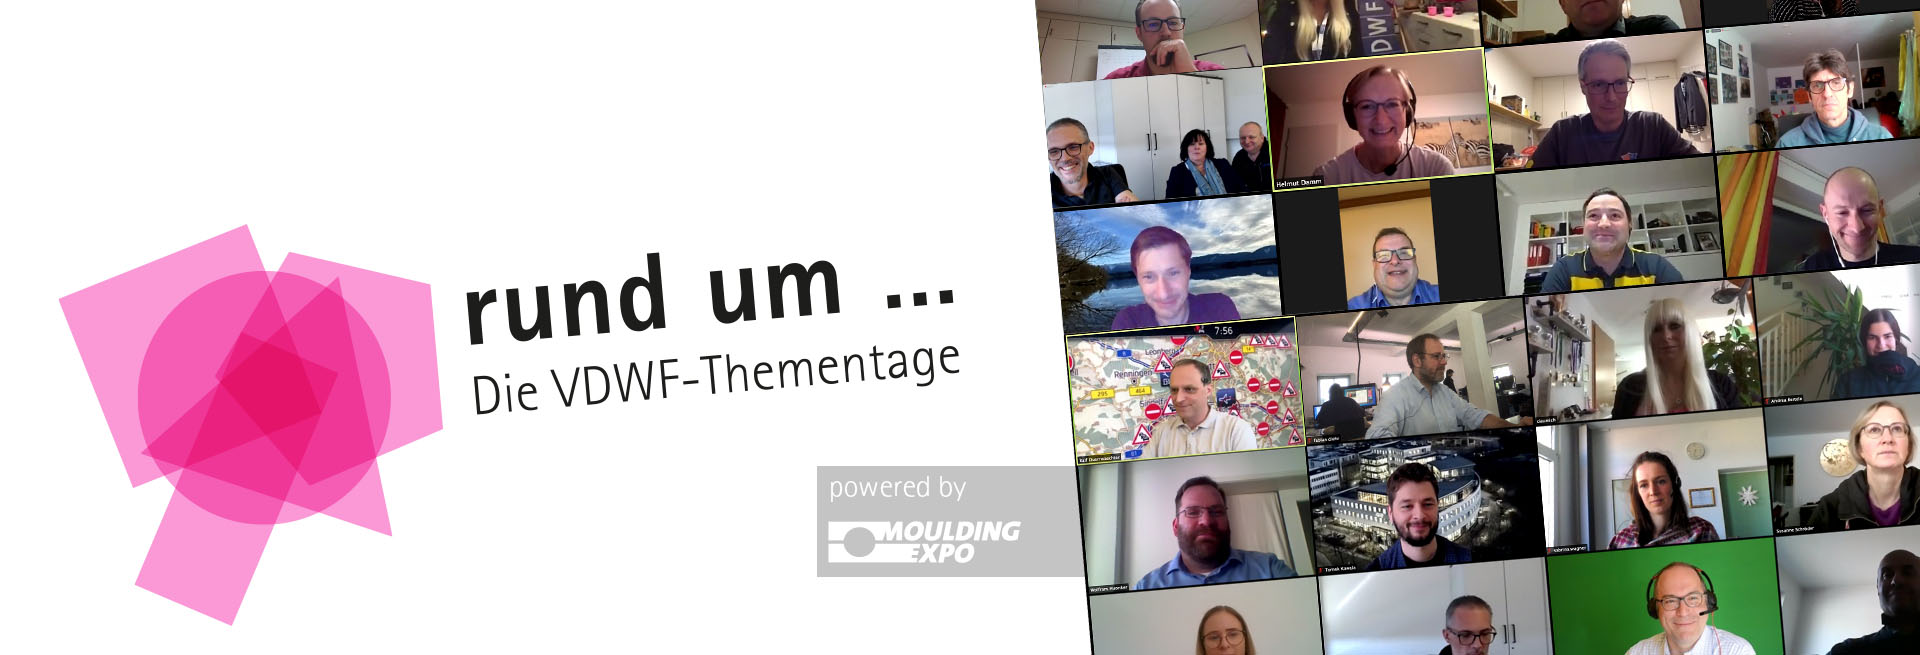 VDWF-Thementage rund um CAM (online und kostenfrei)